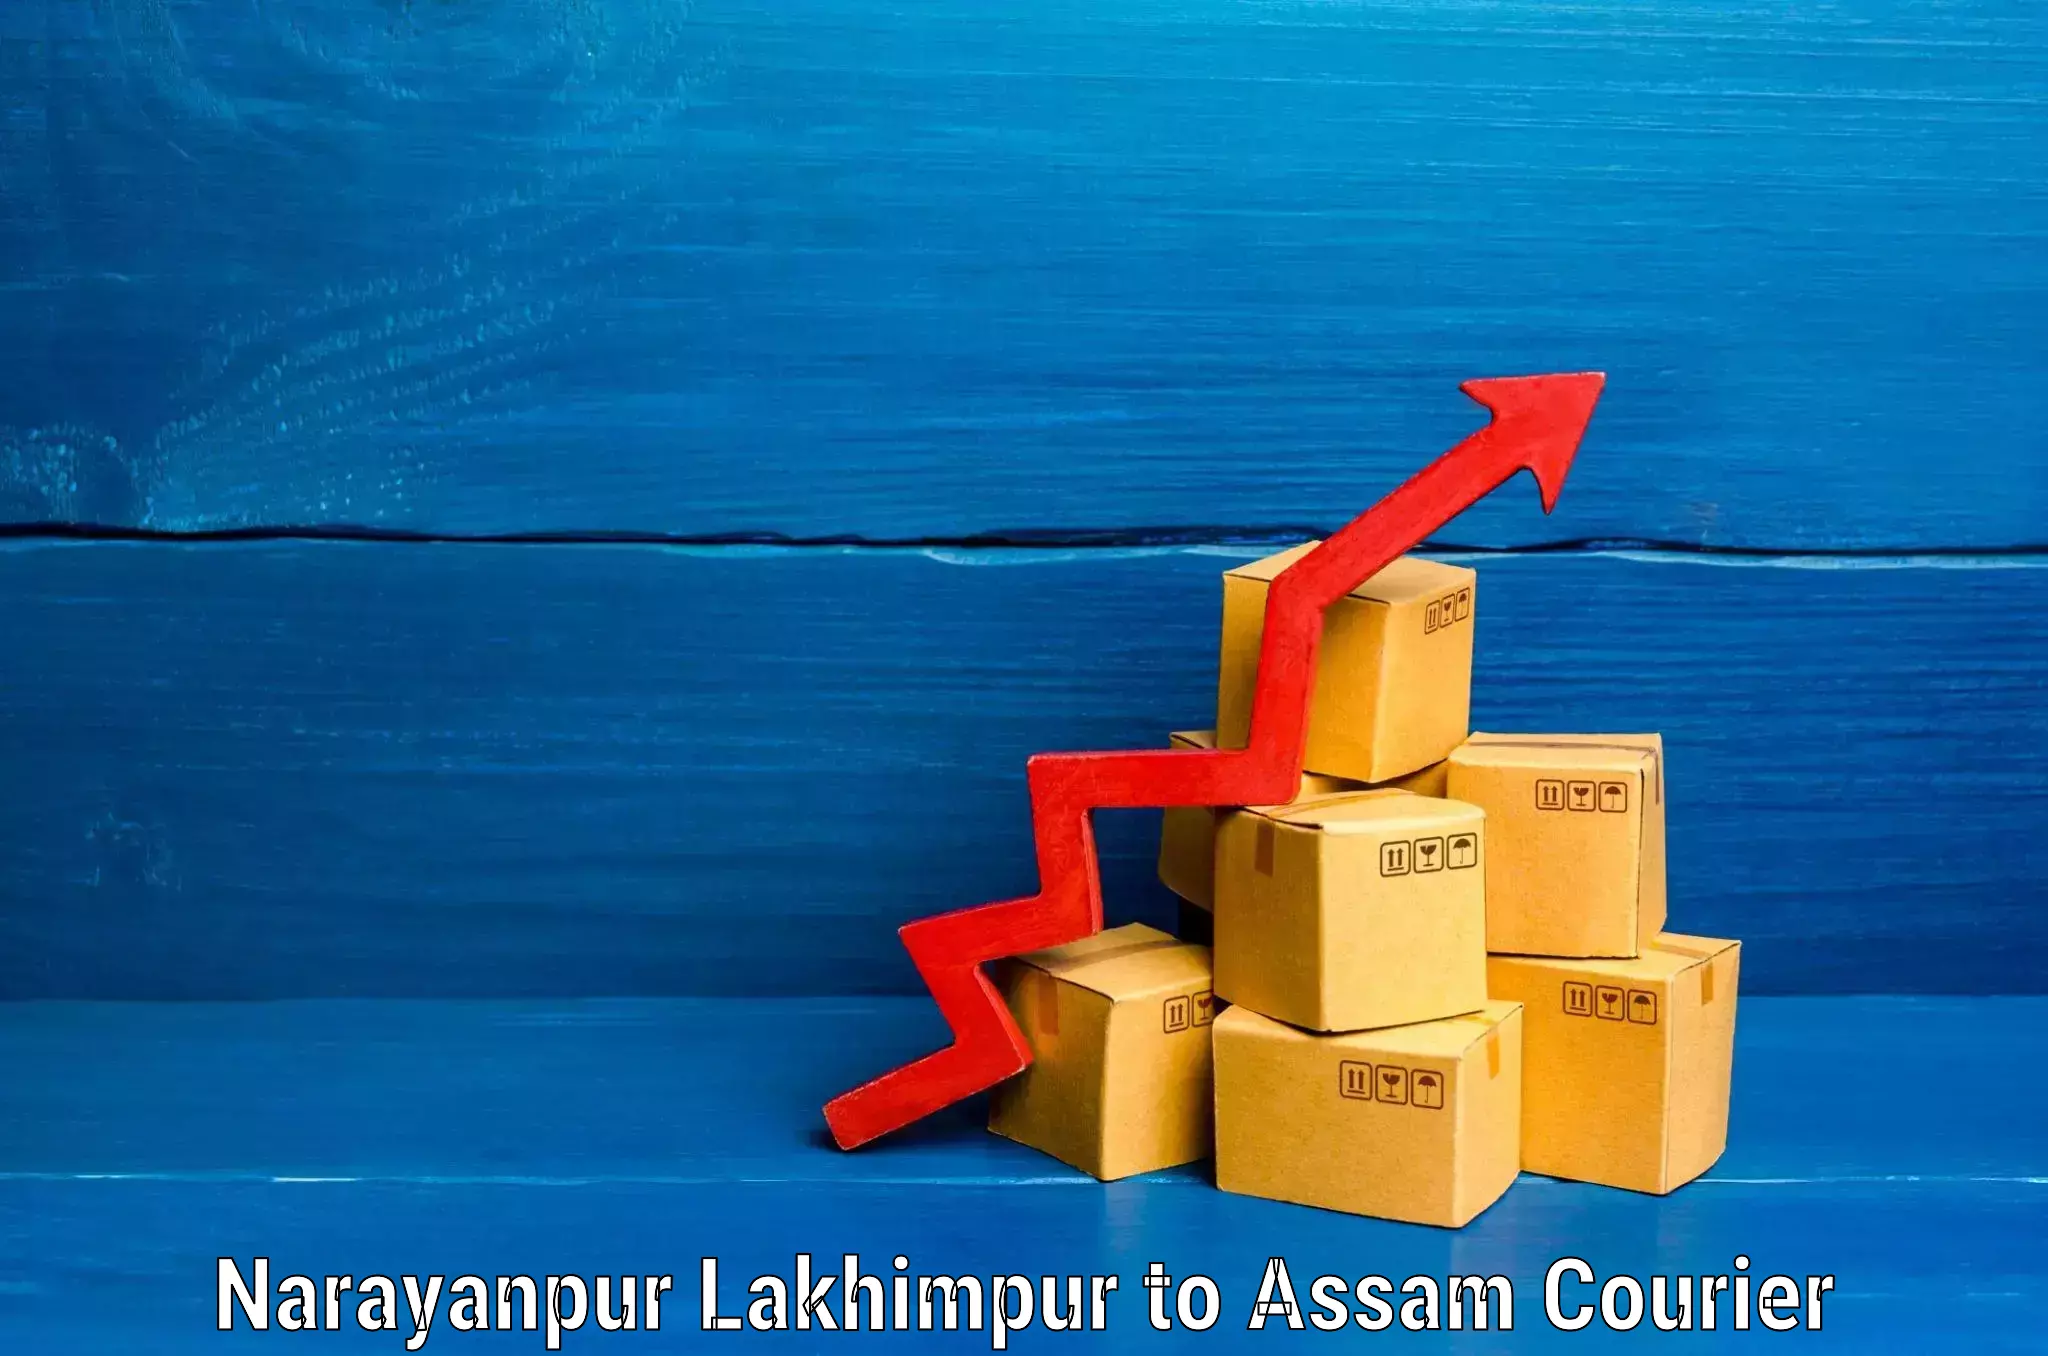 Luggage shipping guide Narayanpur Lakhimpur to Lakhipur